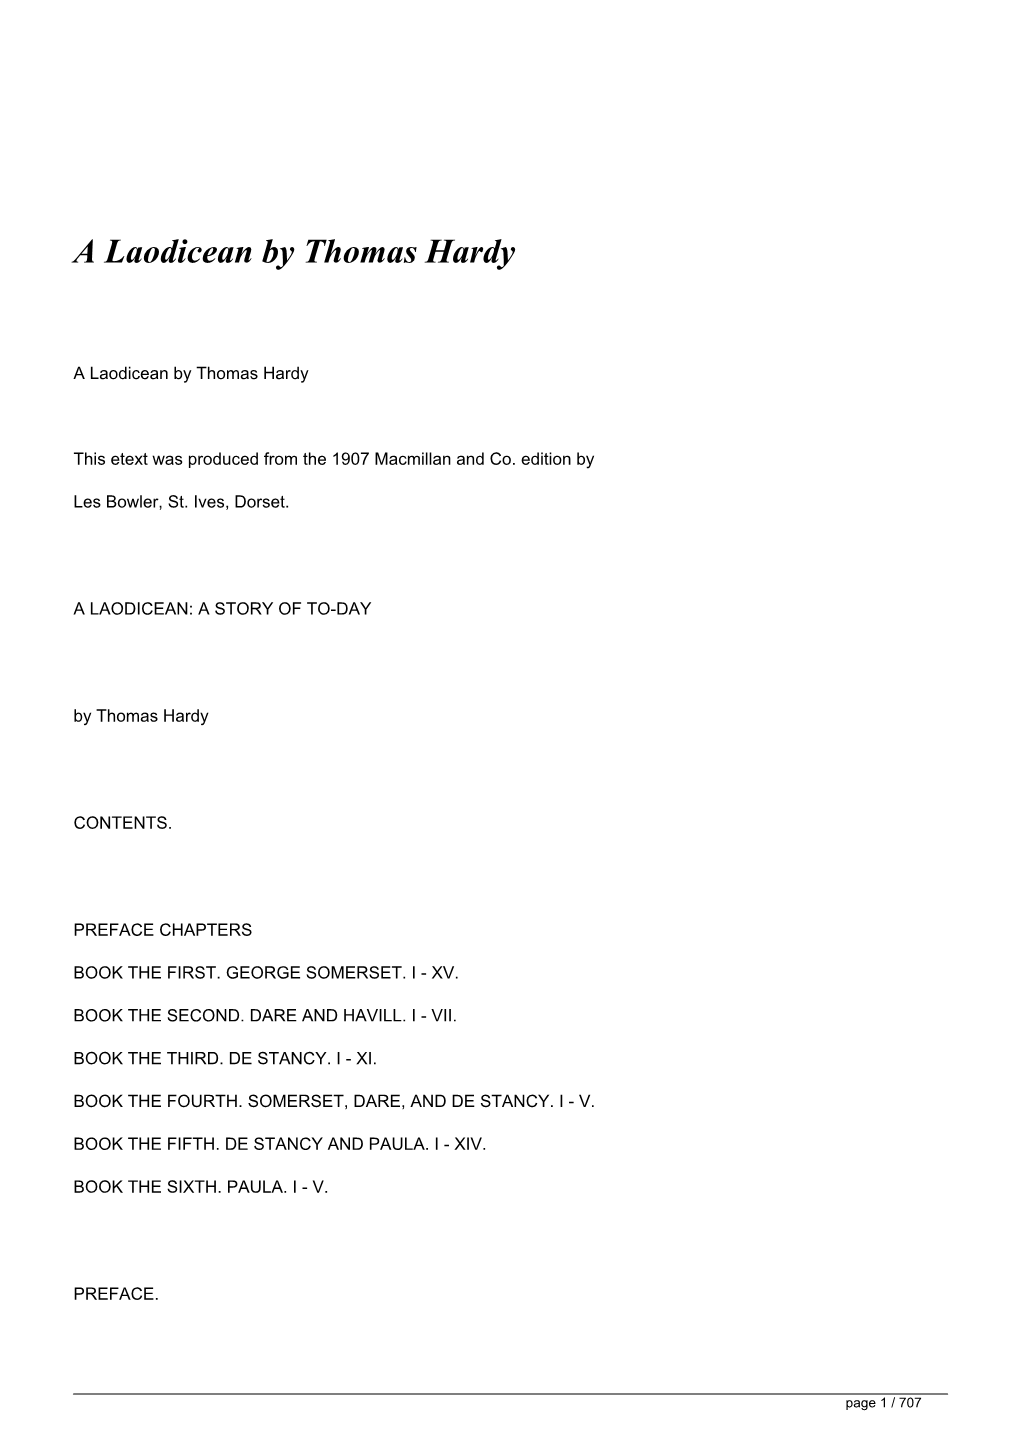 A Laodicean by Thomas Hardy&lt;/H1&gt;